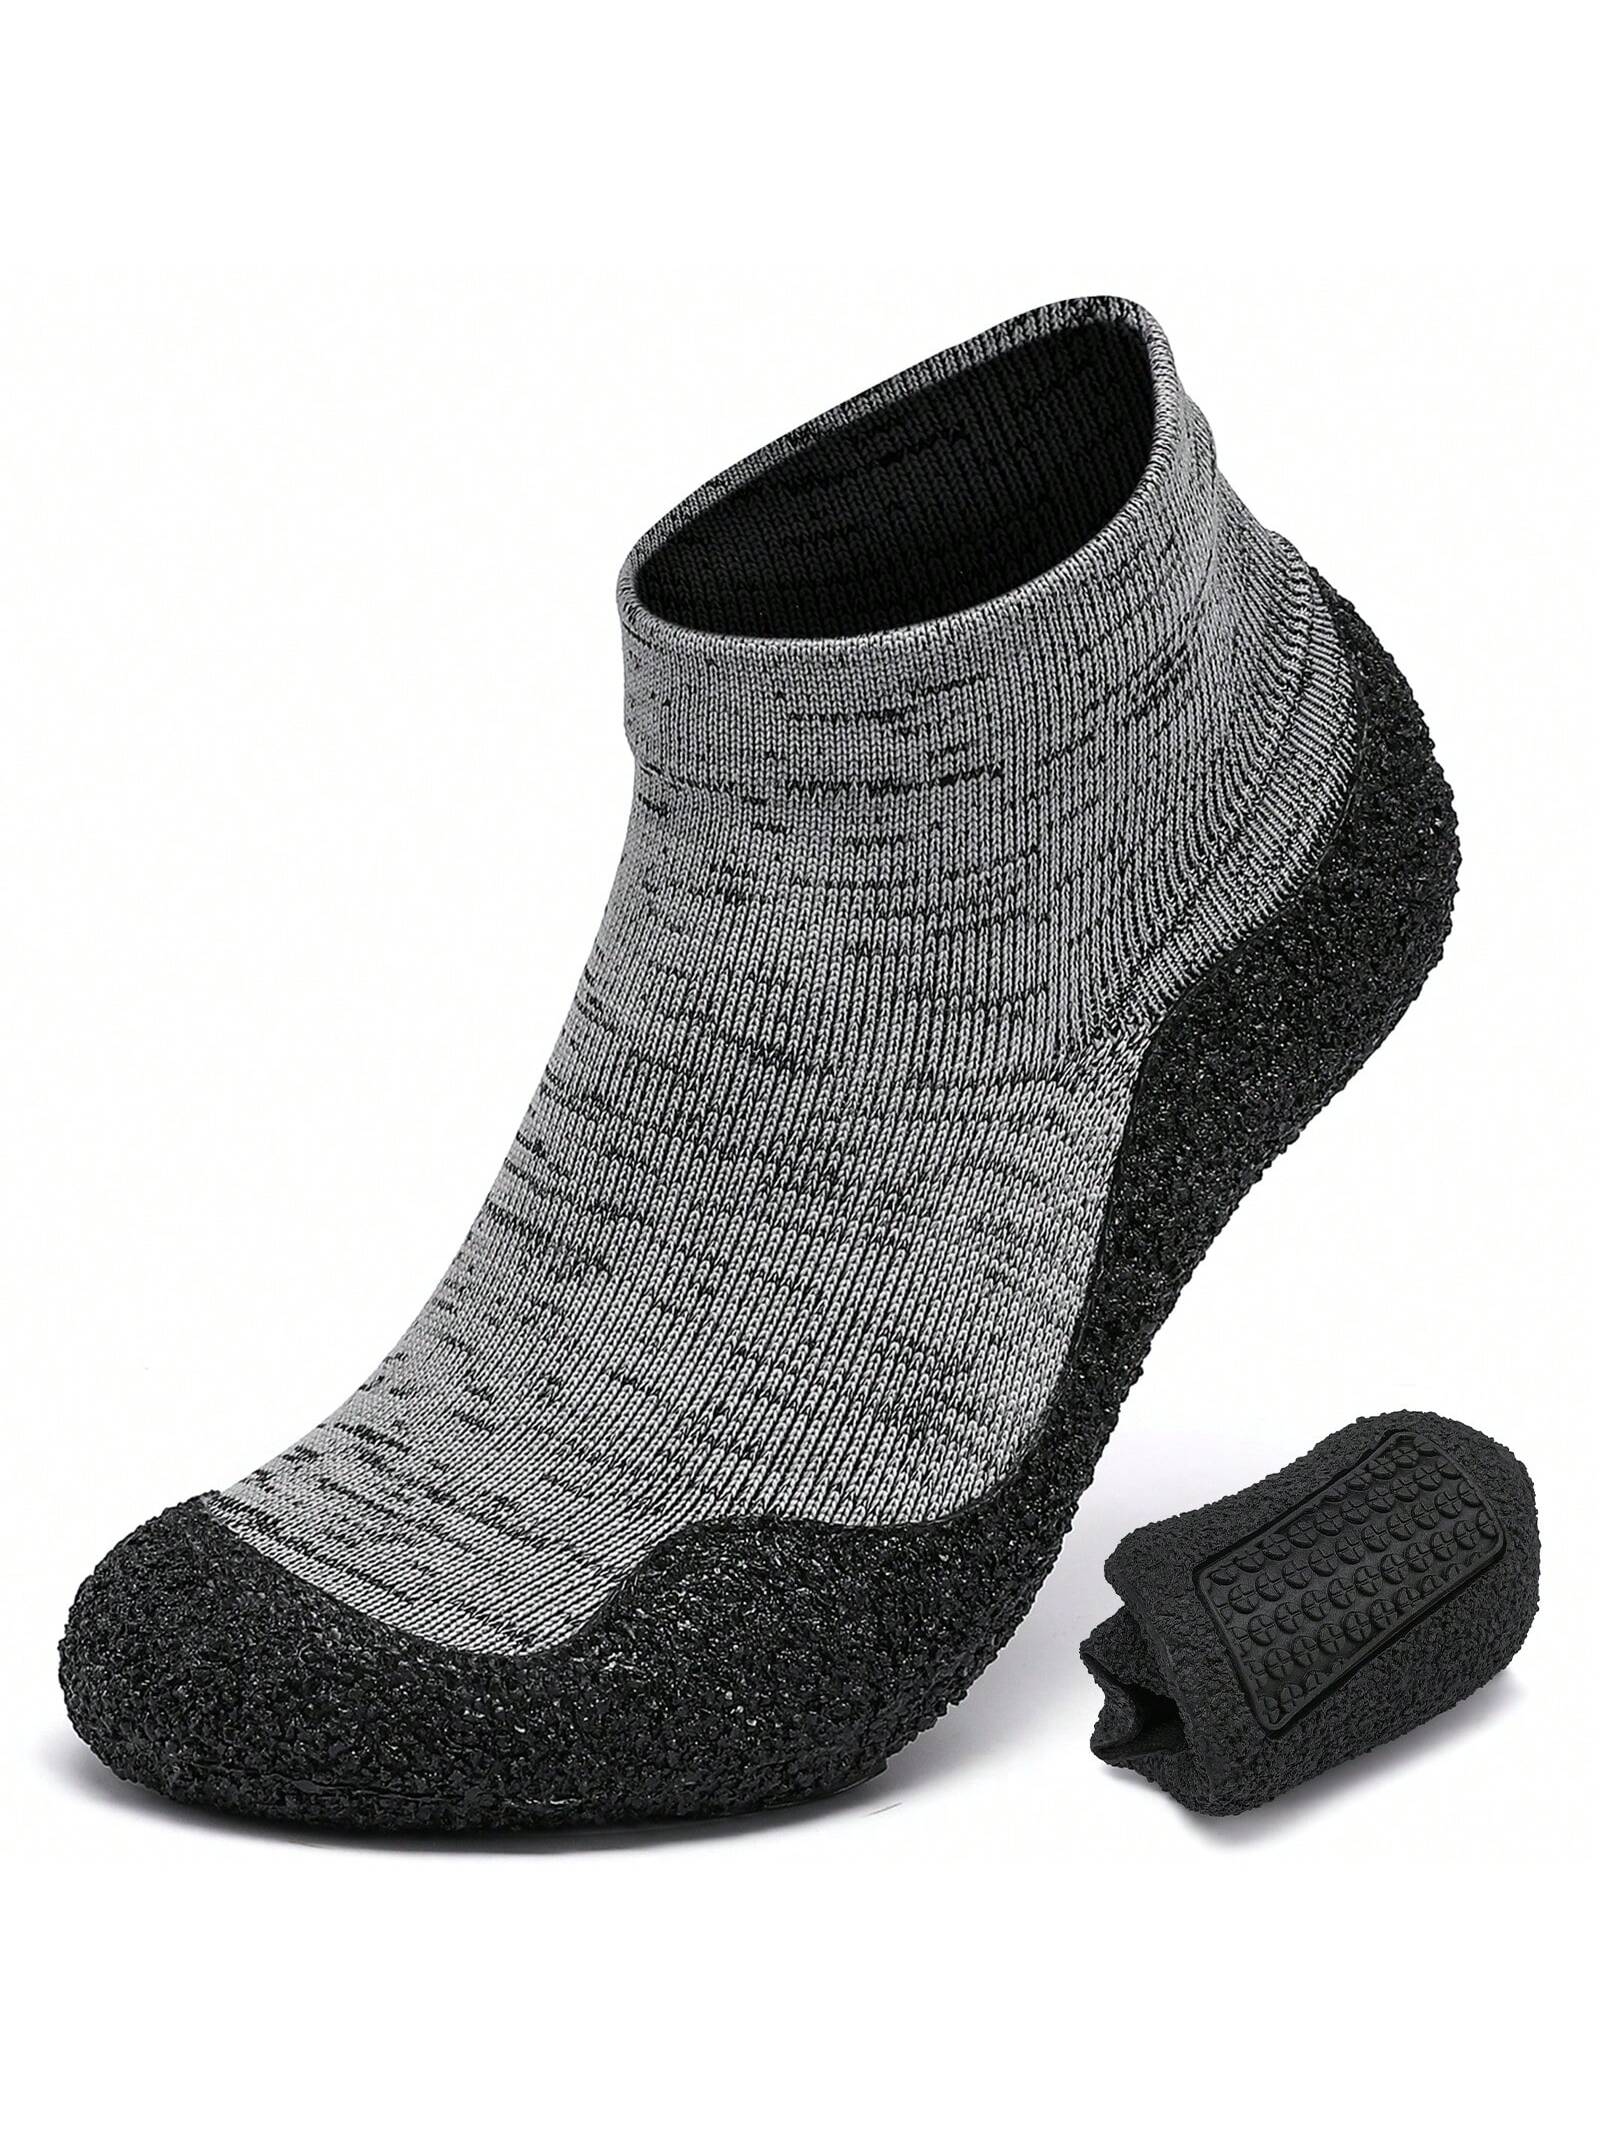 Минималистские туфли-носки для мужчин и женщин | Легкая обувь для ходьбы с нулевым падением | Многоцелевой, серый черный